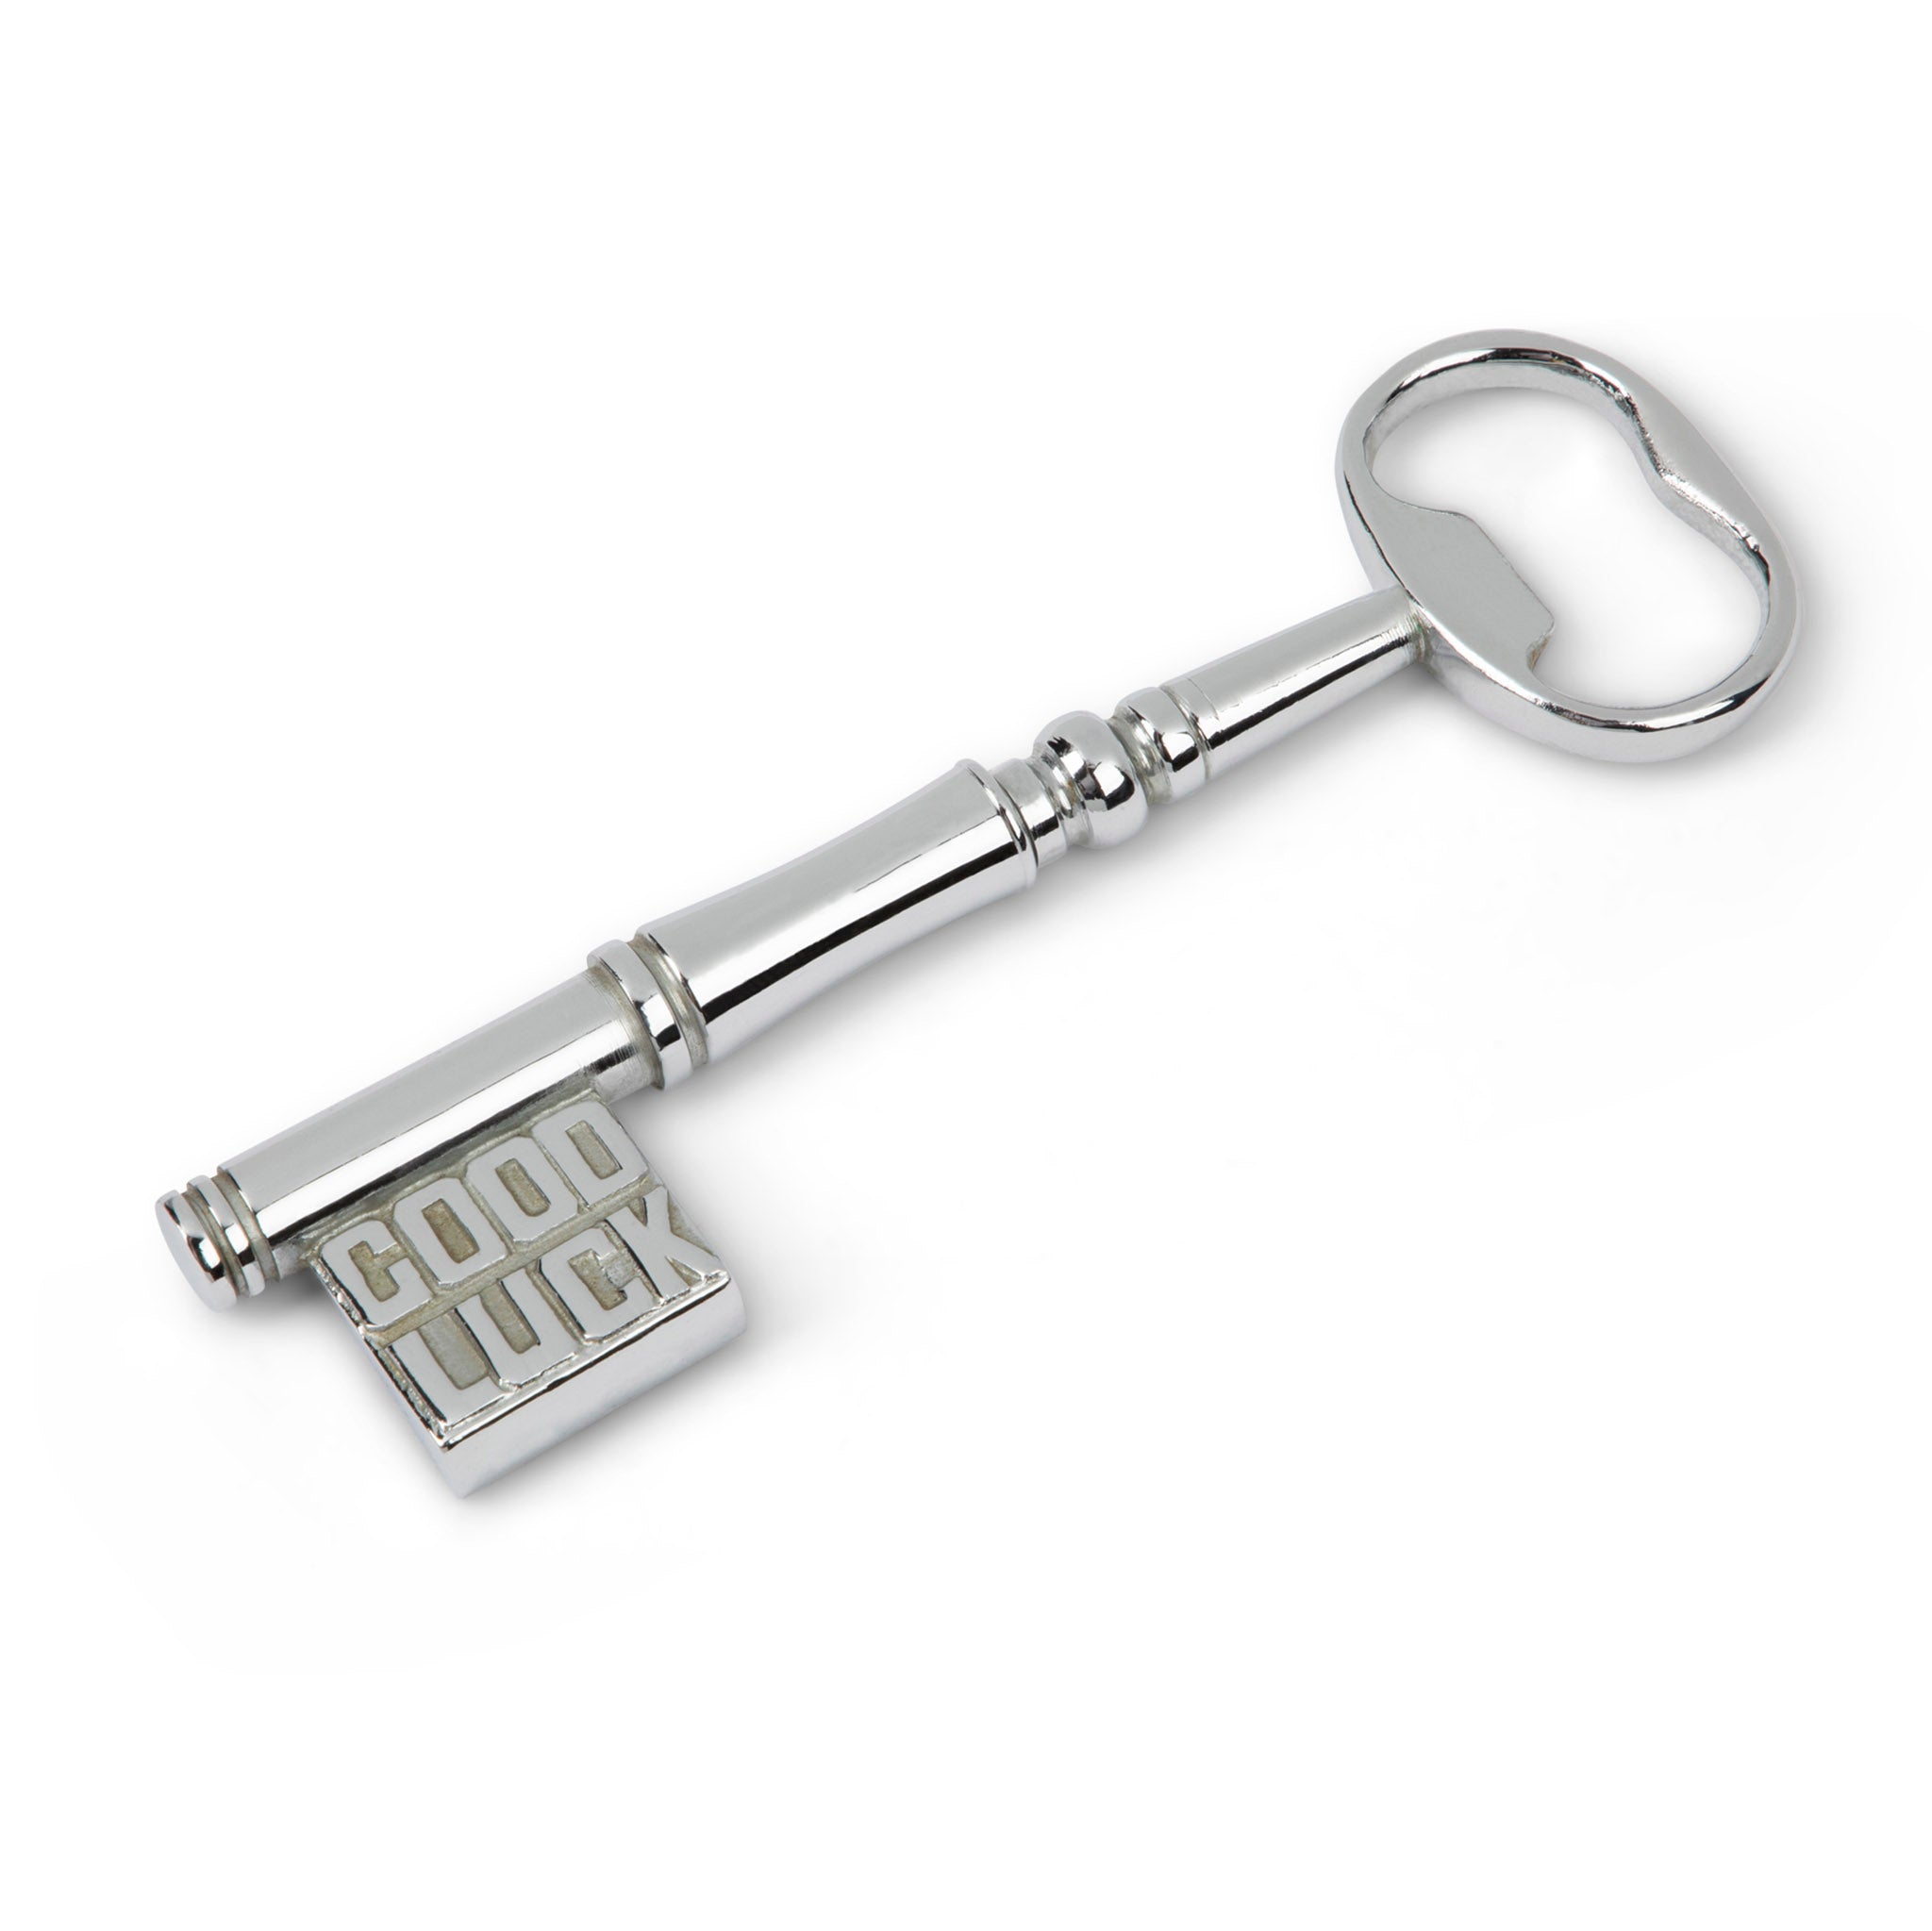 Keychain Corkscrew – Gentlemen's Hardware